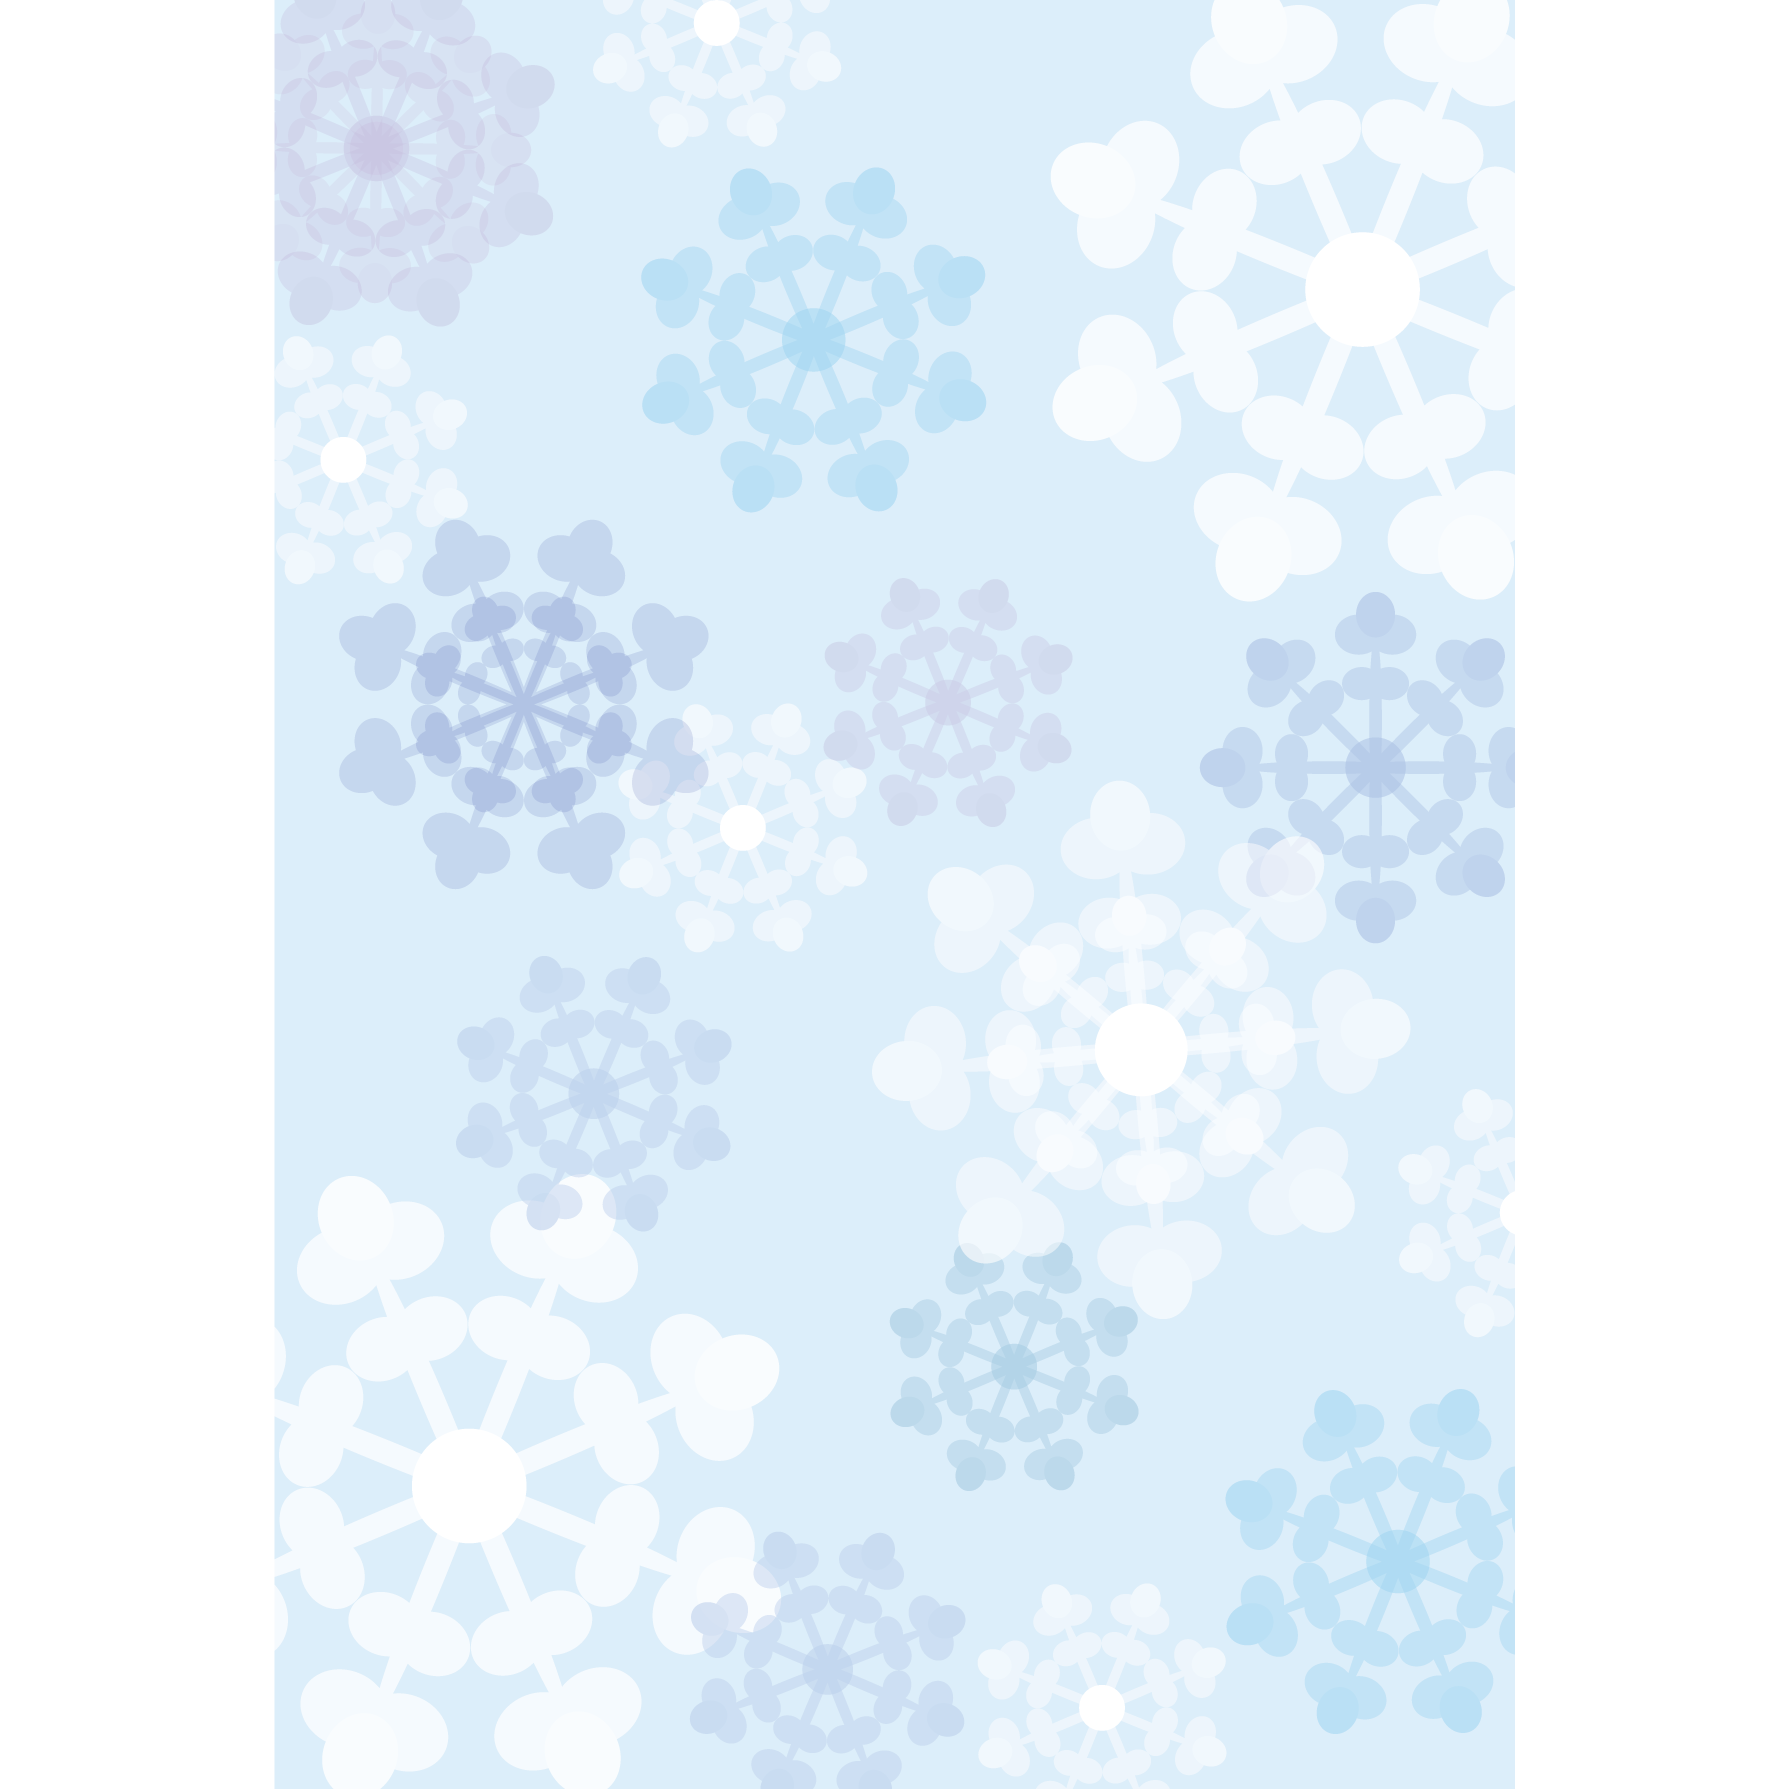 かわいい 雪の結晶の背景 デザイン素材 A4 フリーイラスト 商用